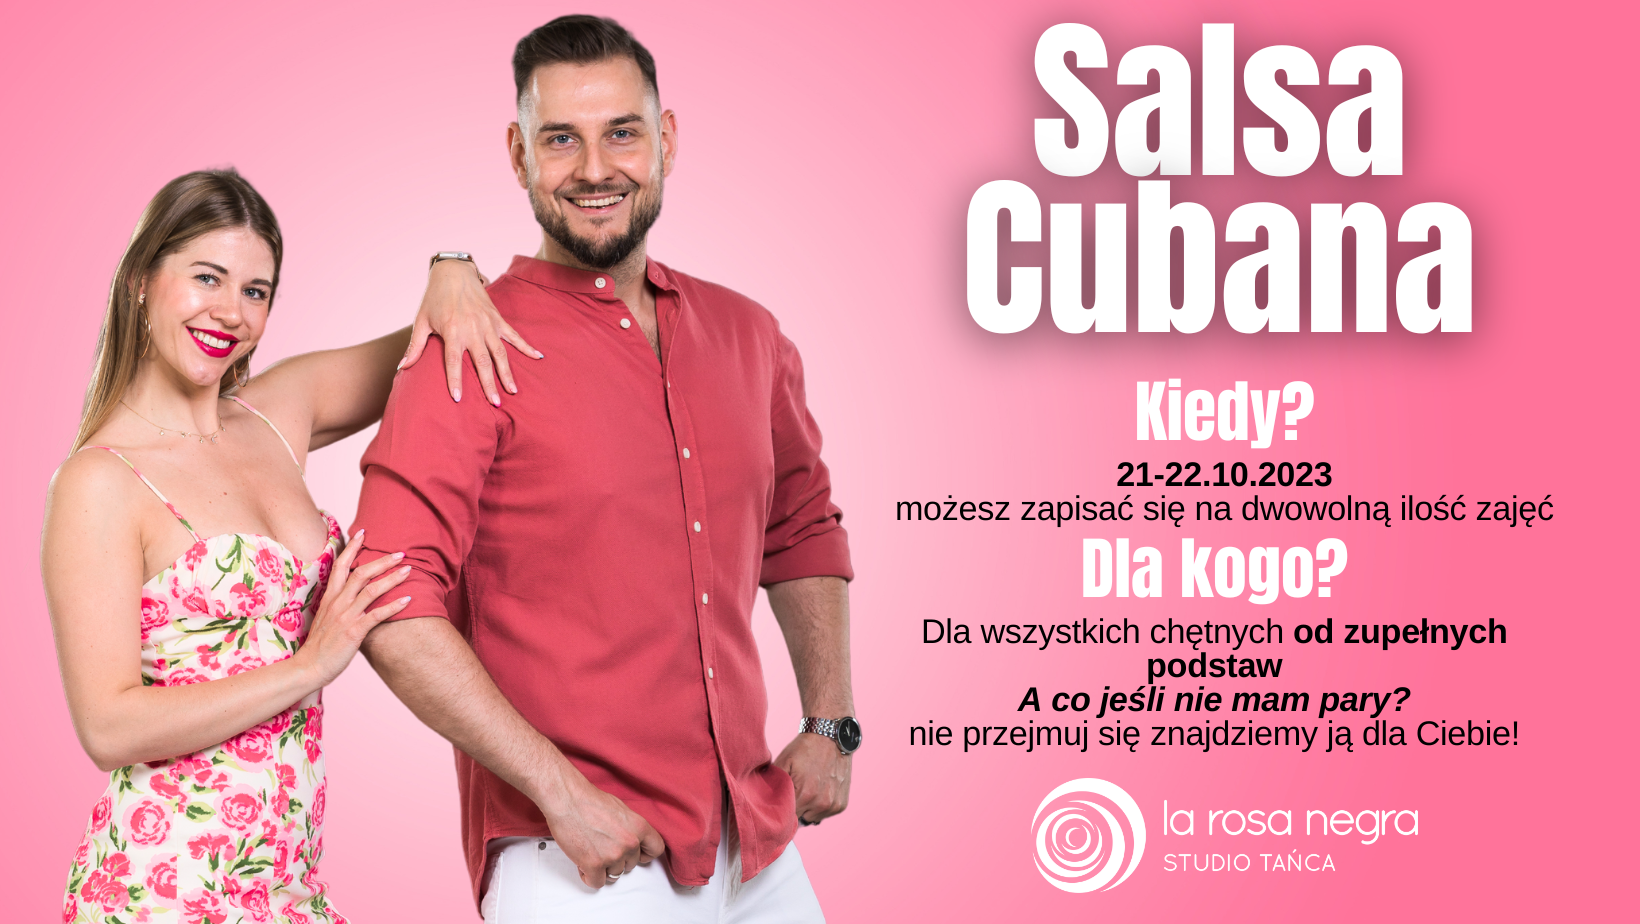 Salsa cubana od podstaw z Patrycją & Michałem - zajęcia weekendowe